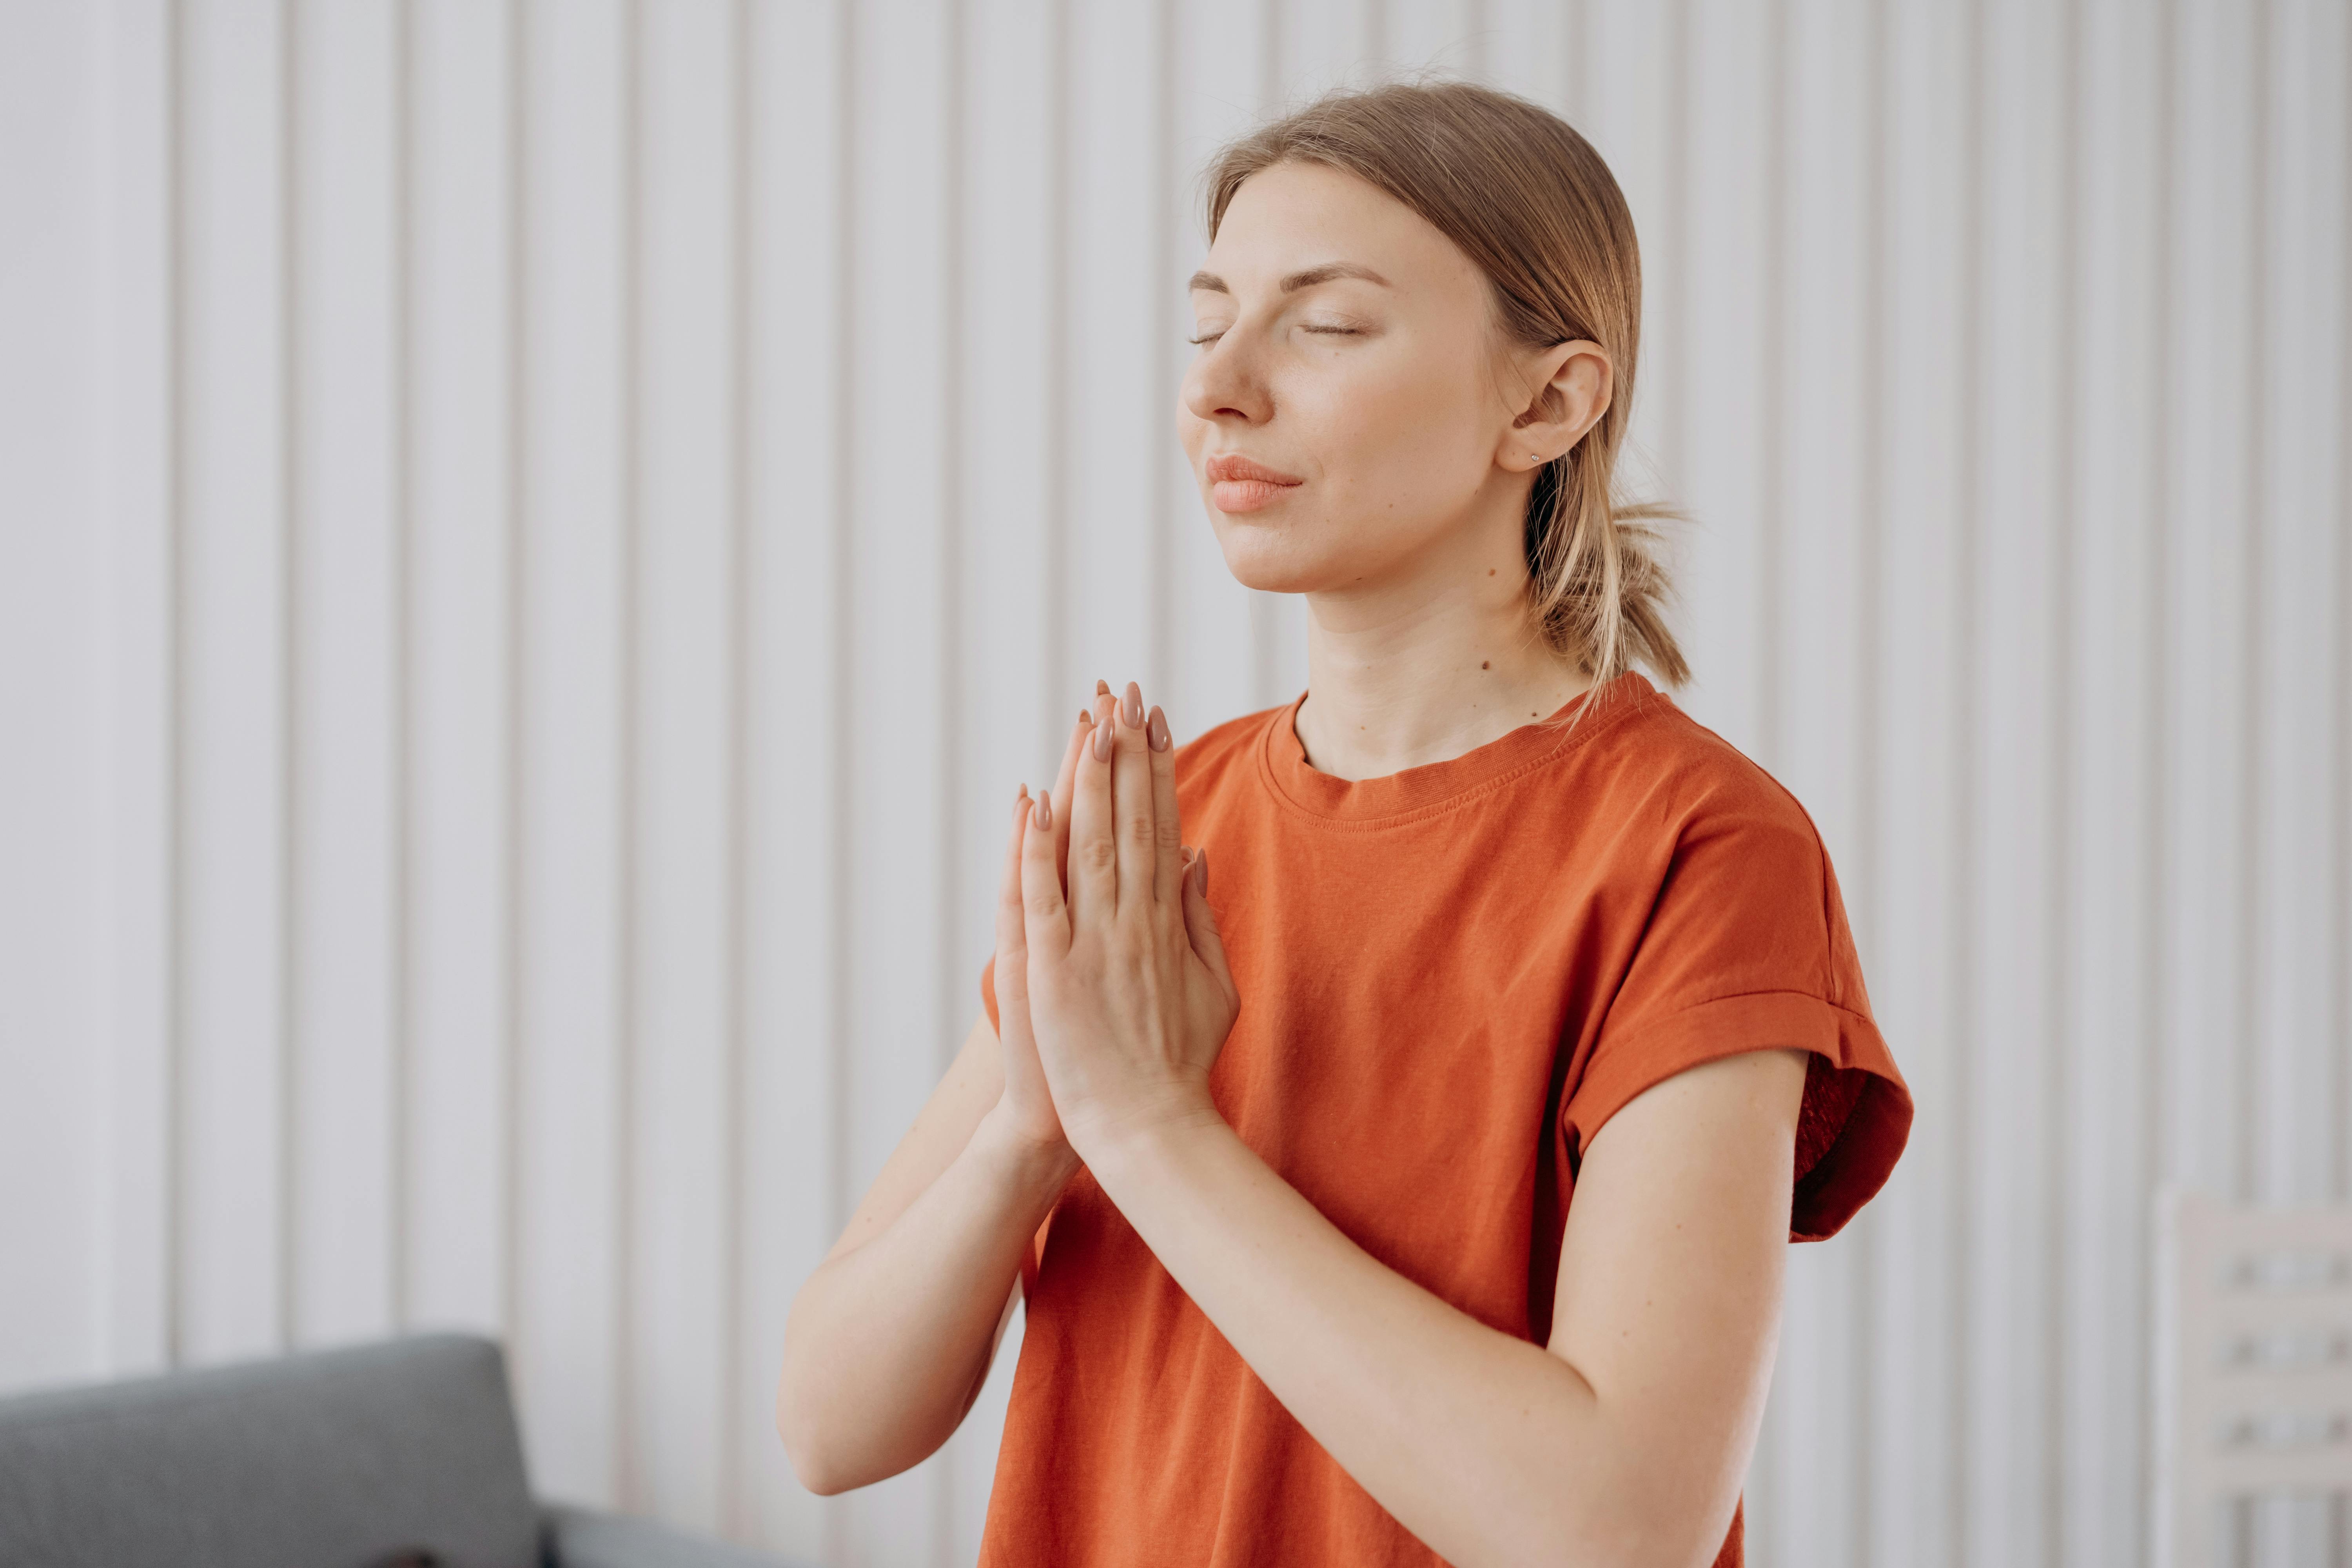 3. Les différentes techniques de méditation pour atteindre l'harmonie intérieure